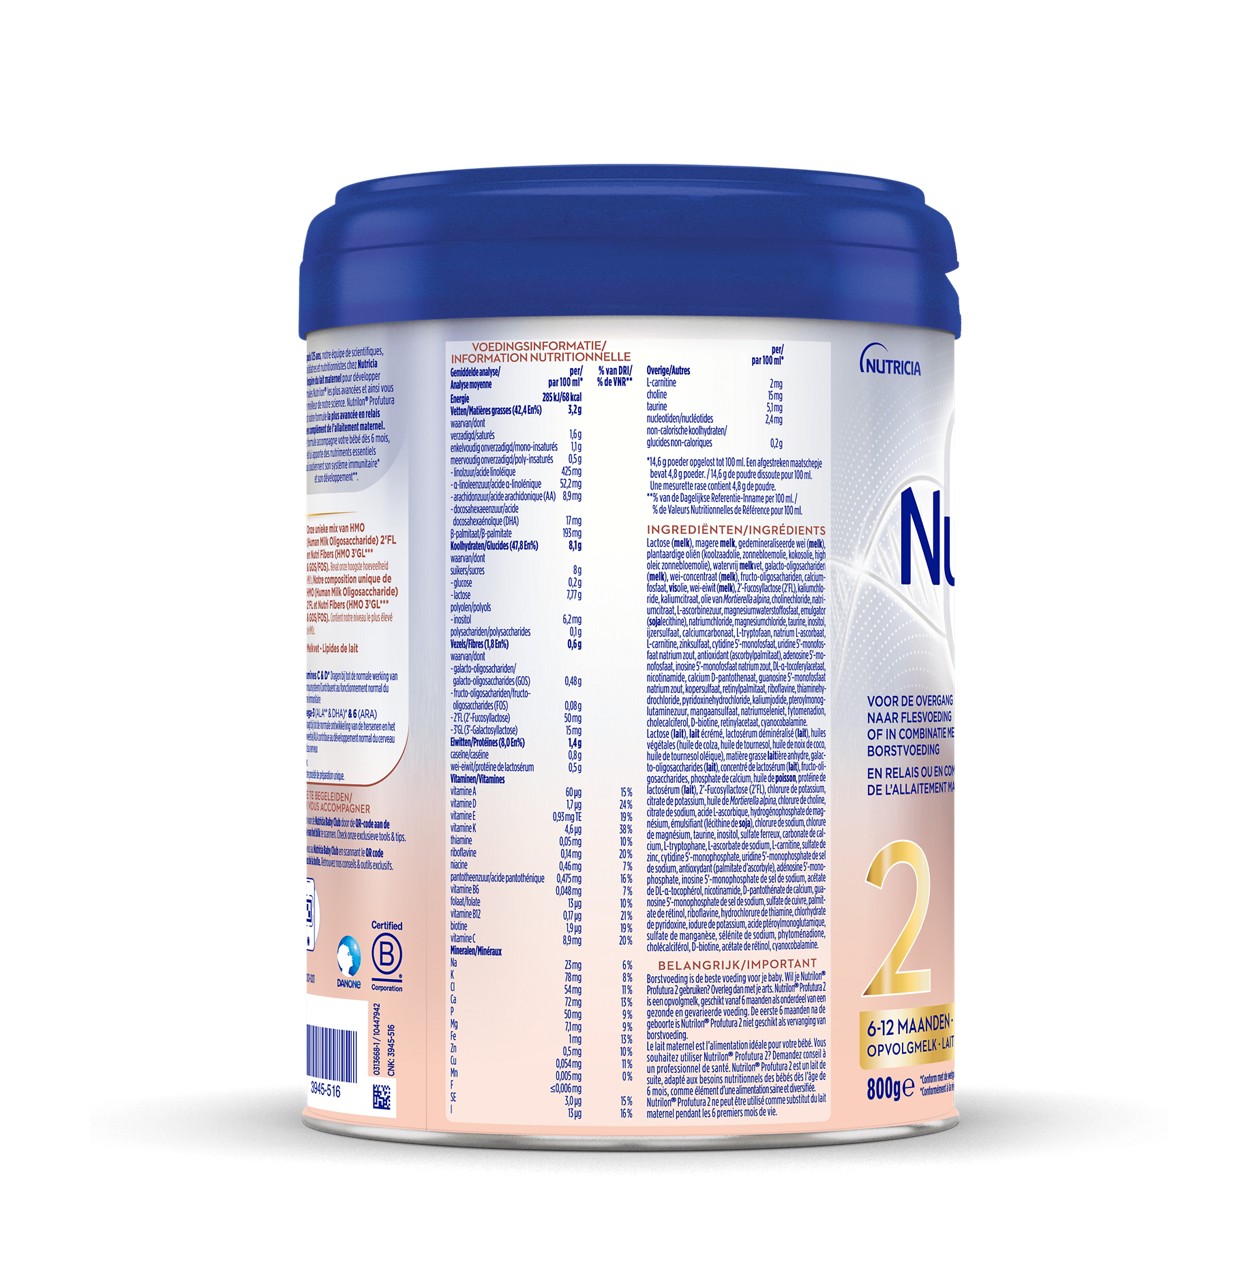 Nutrilon® Profutura 2 est un lait de suite adapté aux besoins nutritionnels des bébés dès l'âge de 6 mois, comme élément d'une alimentation saine et diversifiée.